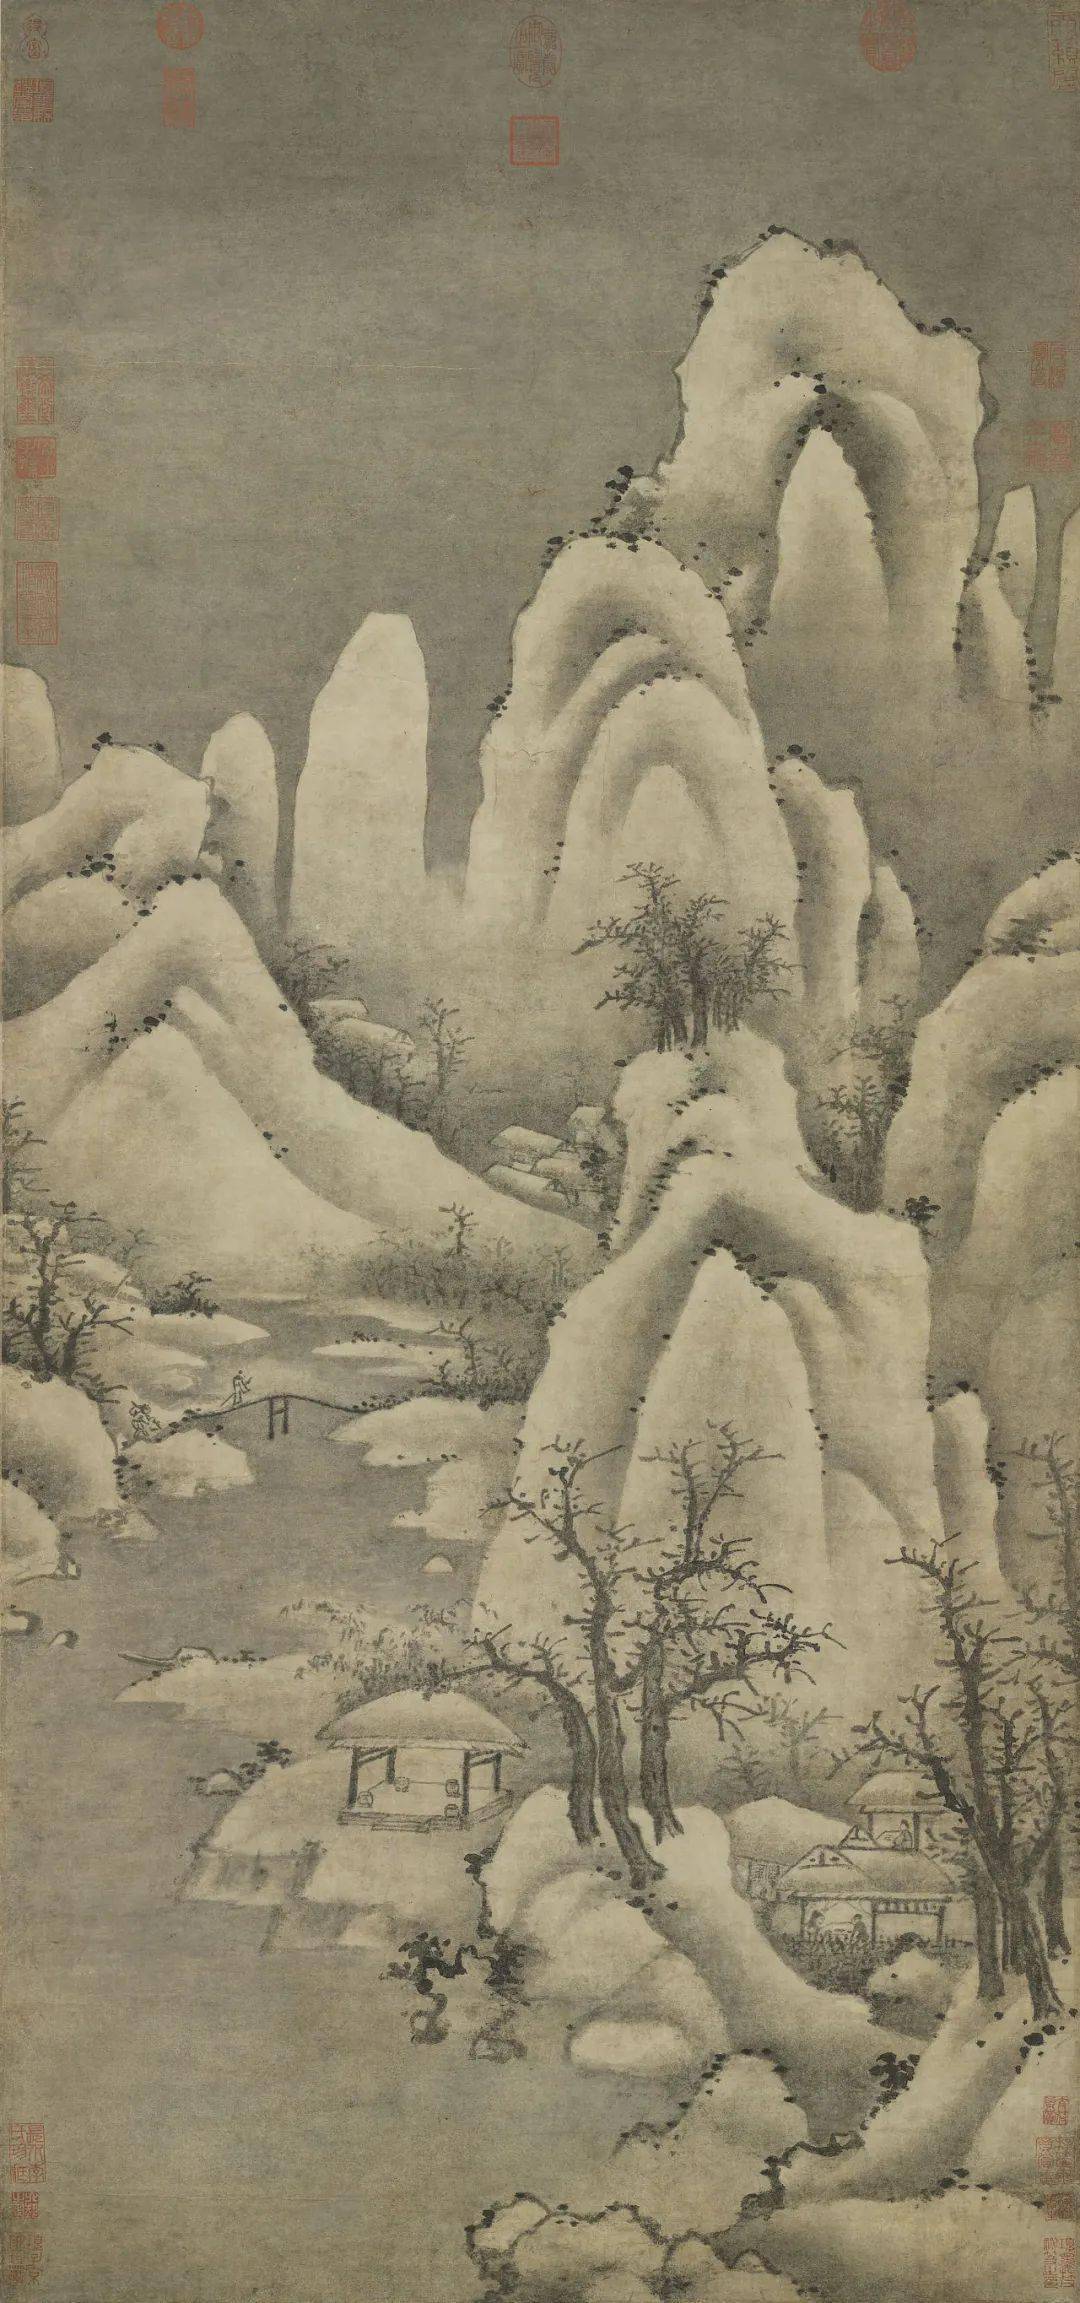 世界最美的雪景,藏在宋代名画里